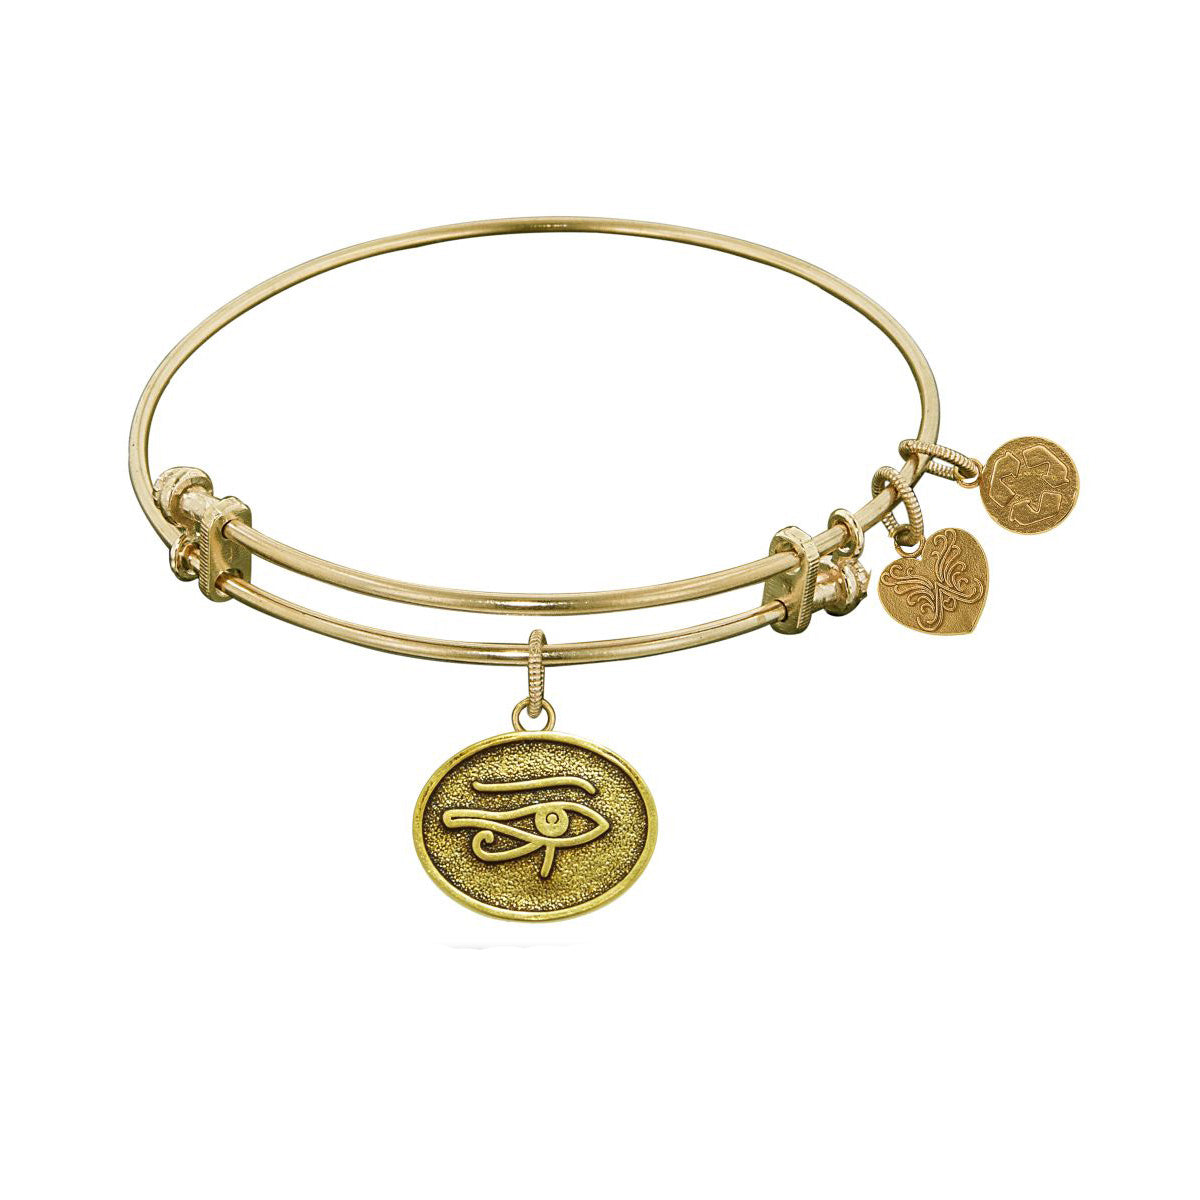 Stipple Finish Brass Eye of Horus Angelica Bangle Bracelet, 7.25" fine designer jewelry for men and women